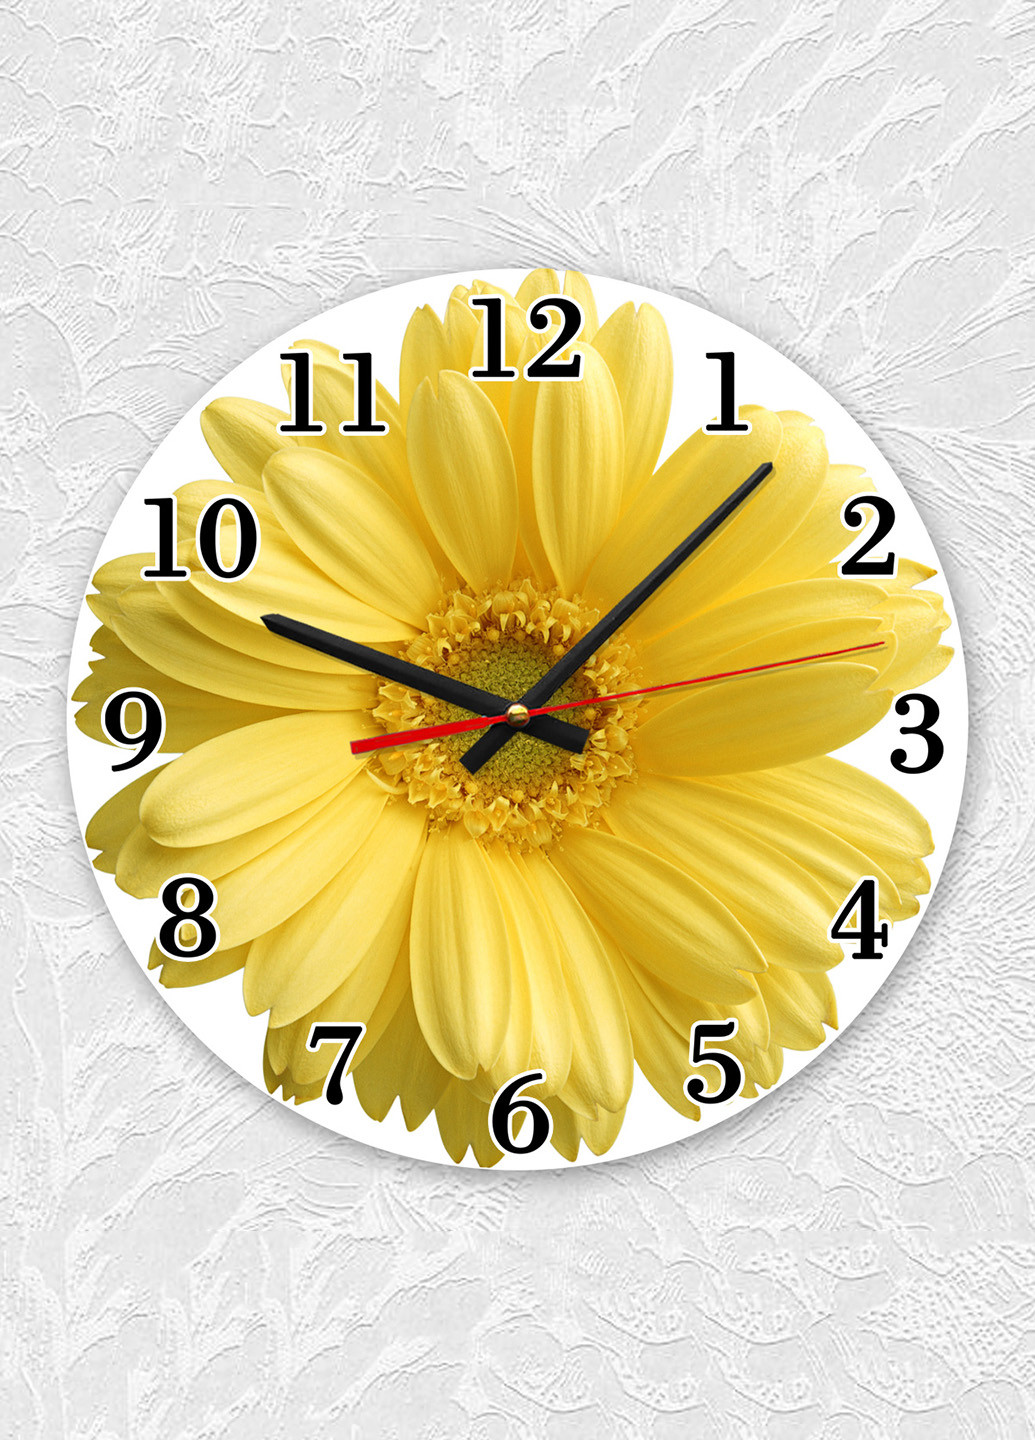 Часы настенные :: Жёлтый цветок Creative (266700744)